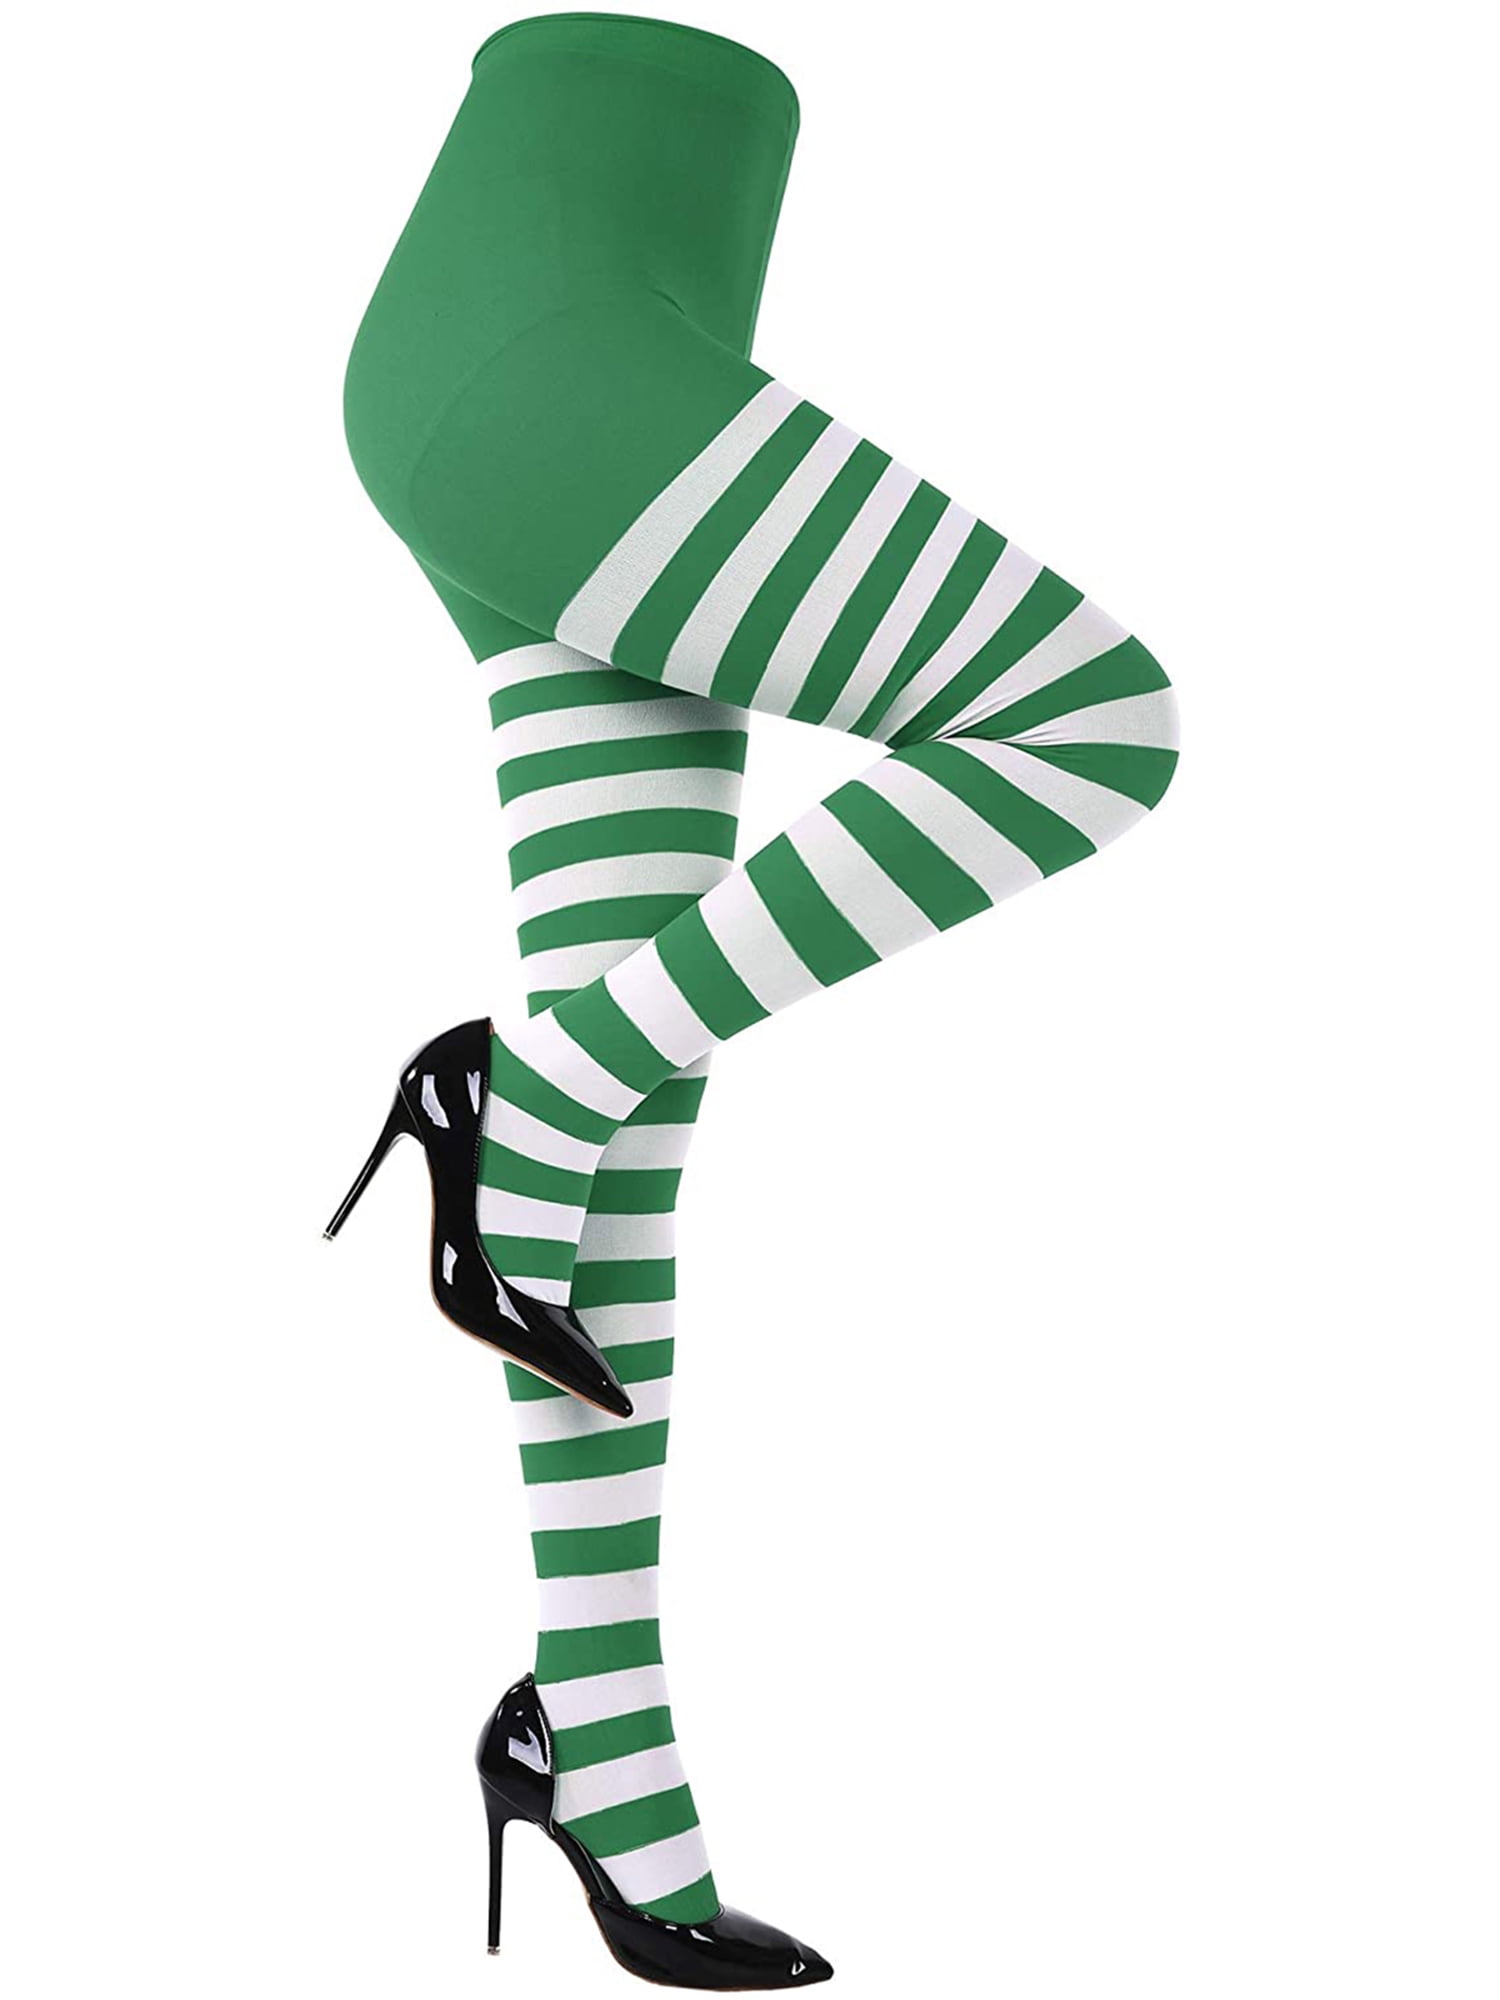 Green and White Striped Leggings, Halloween Leggings for Women